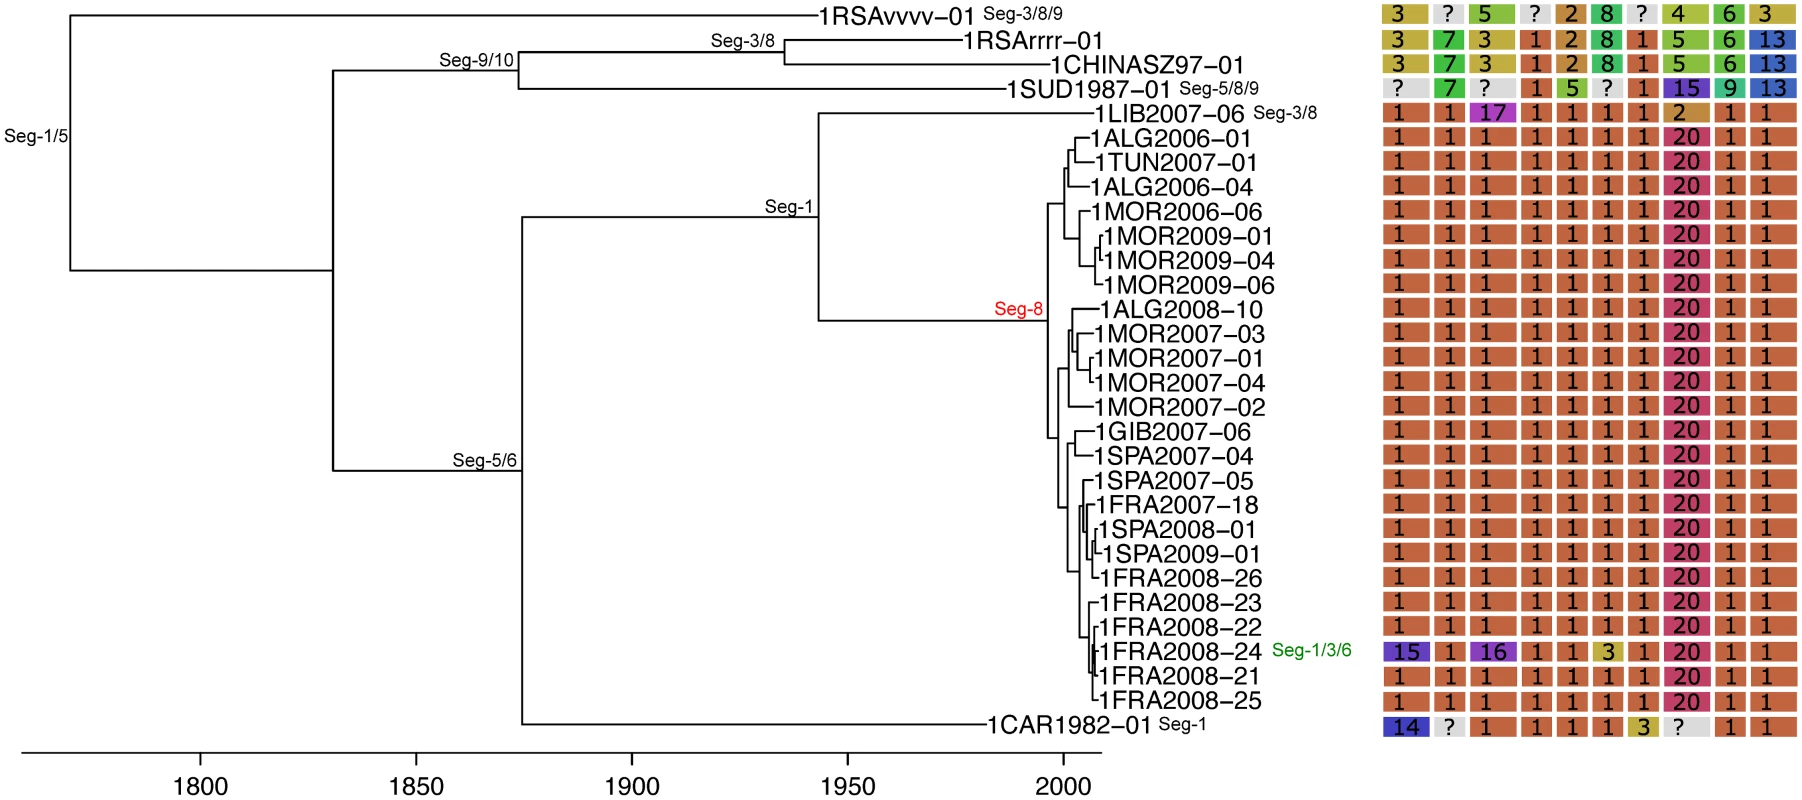 Time-scaled Seg-2 phylogeny of European BTV-1(w) isolates.